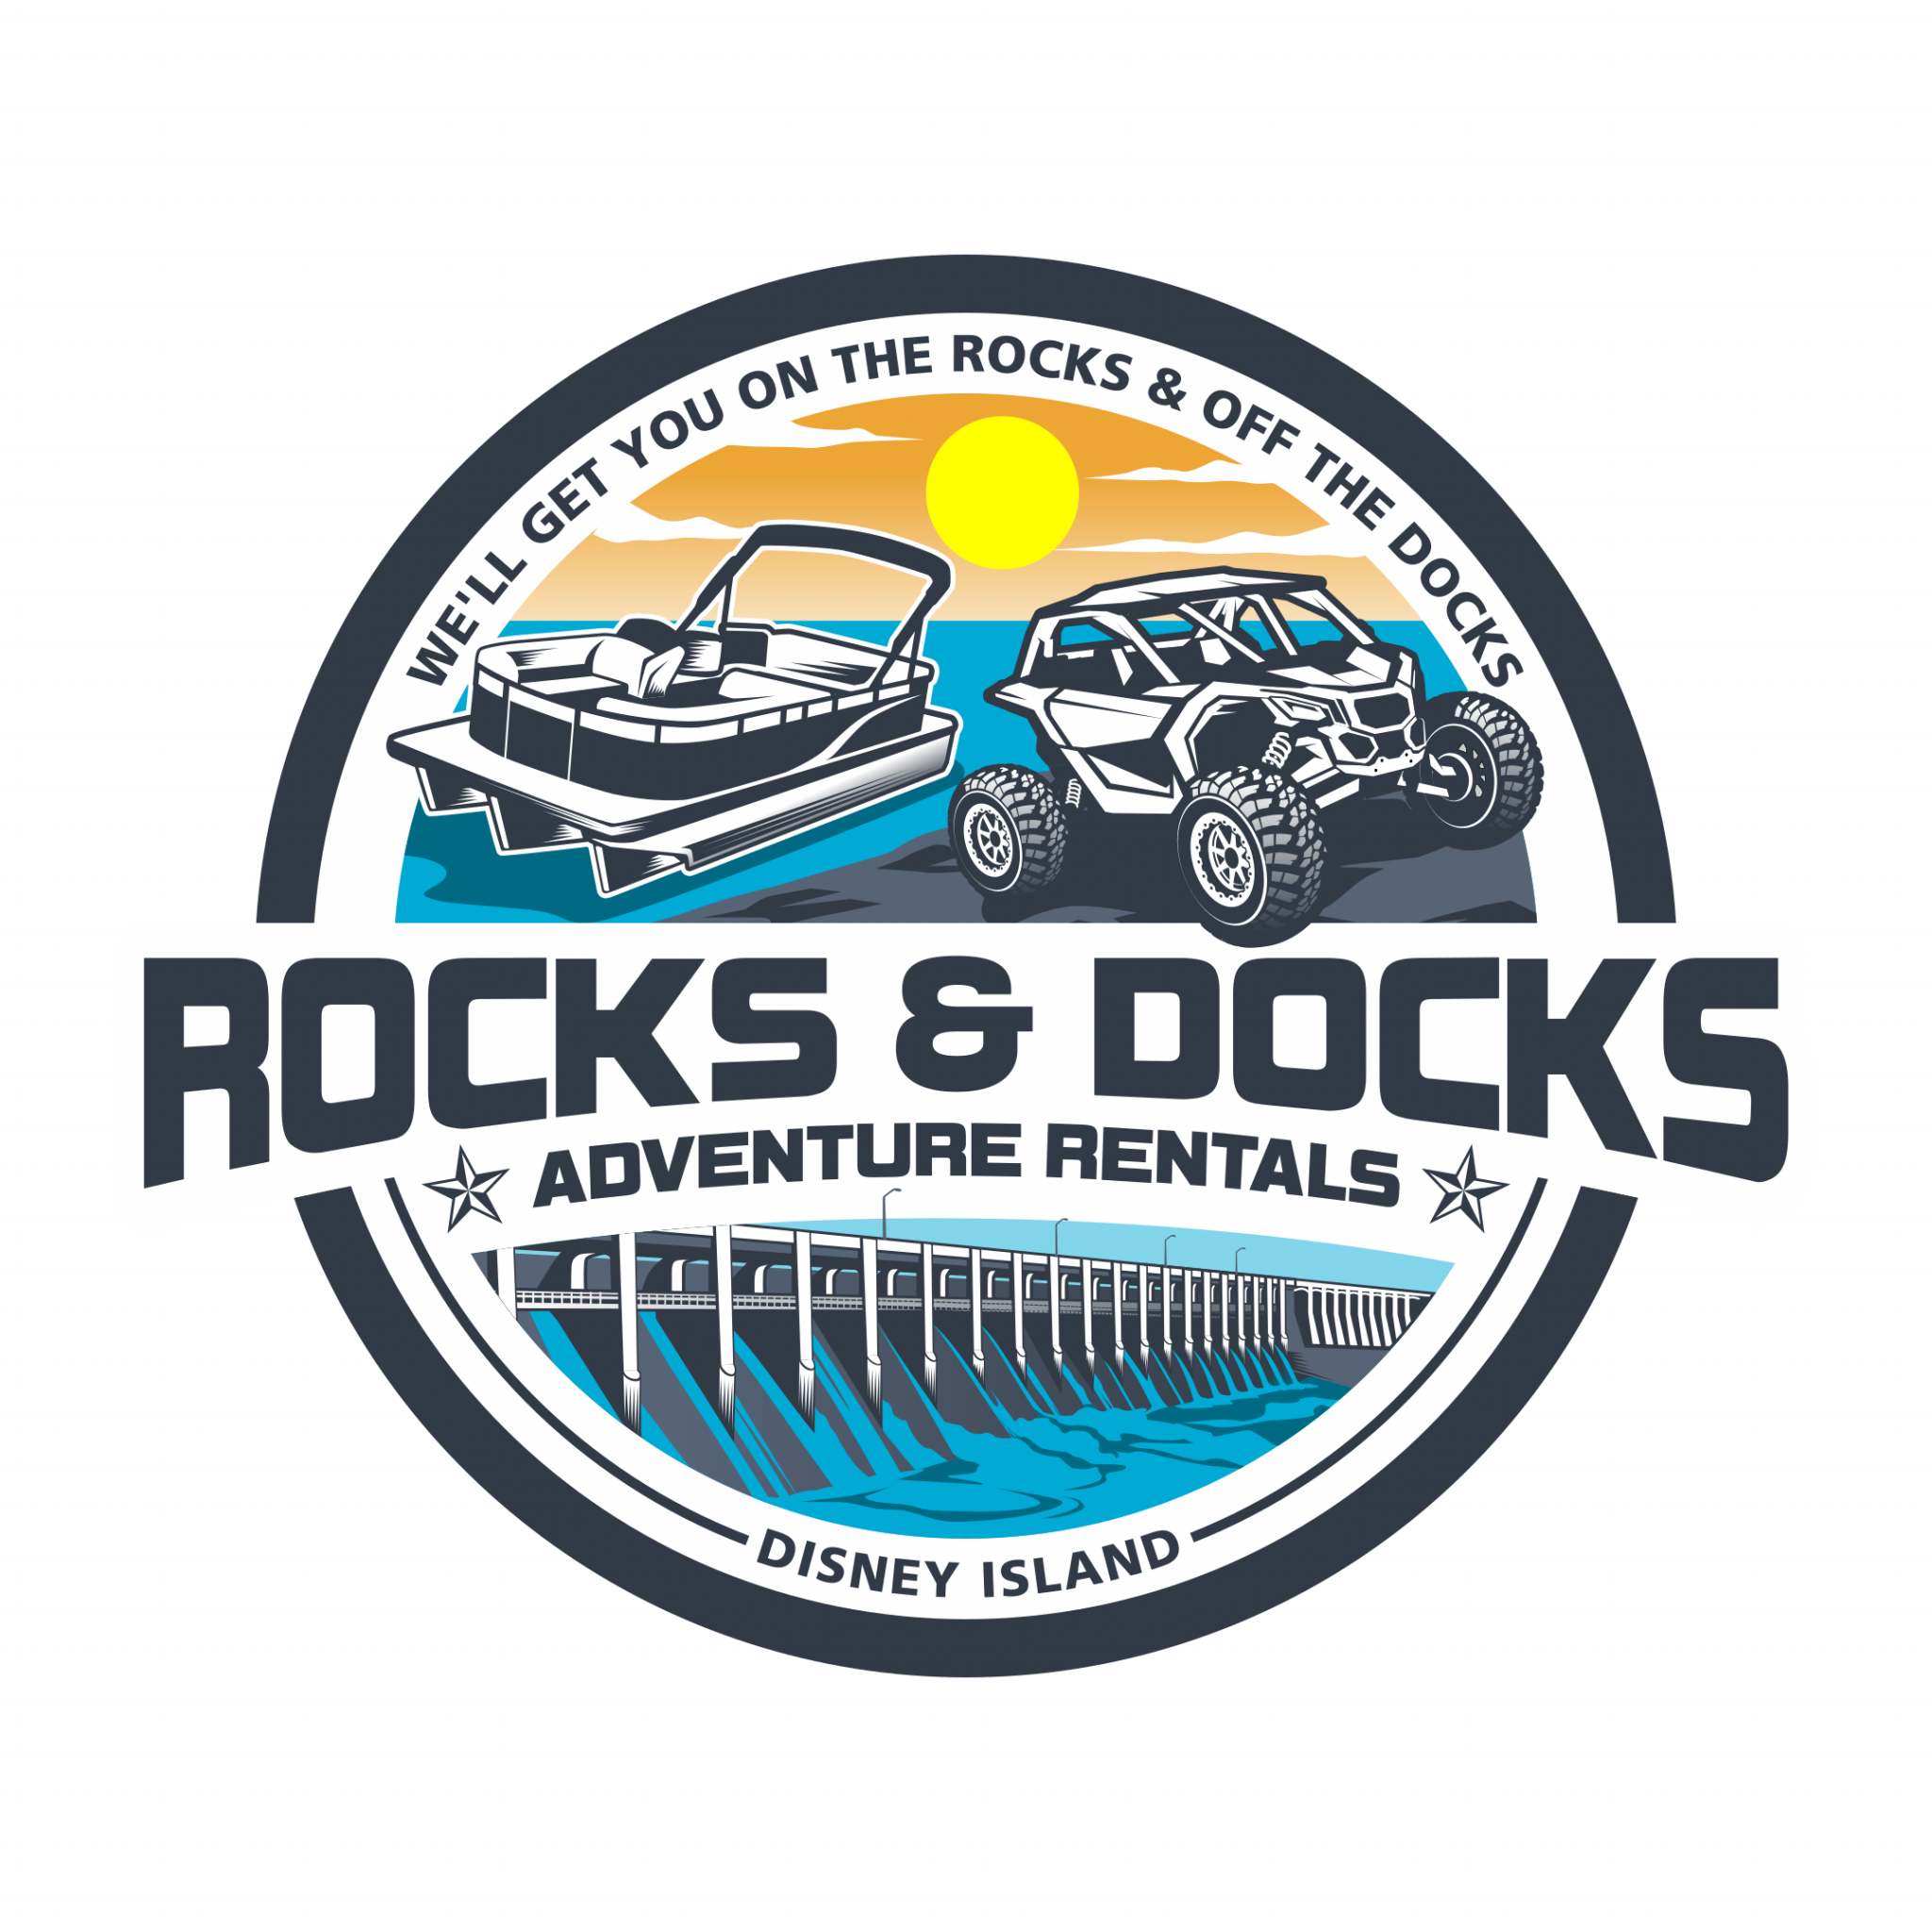 Rocks & Docks Adventure Rentals- https://rocksanddocks.com/